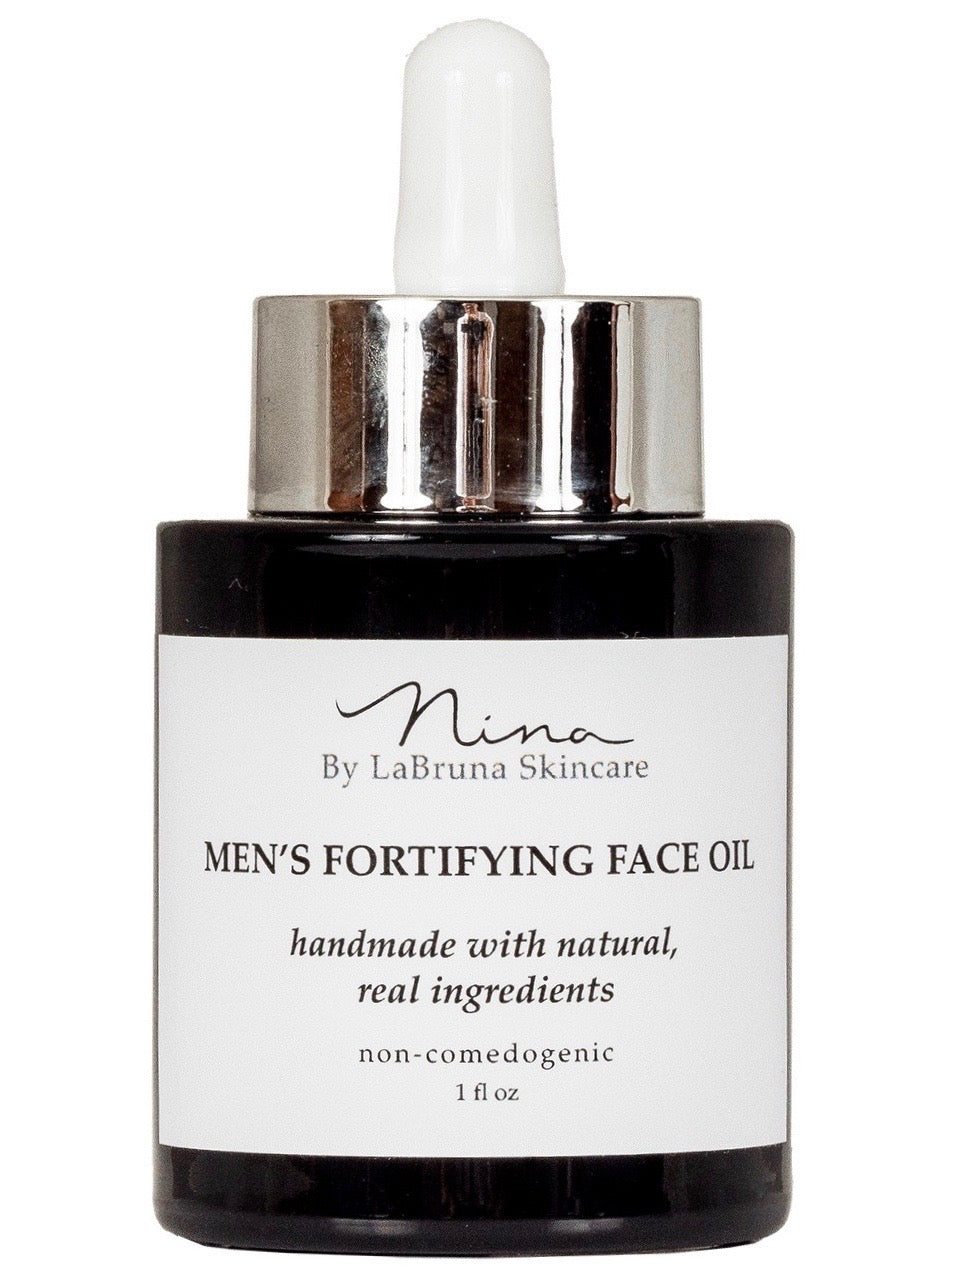 men's fortifying face oil bottle